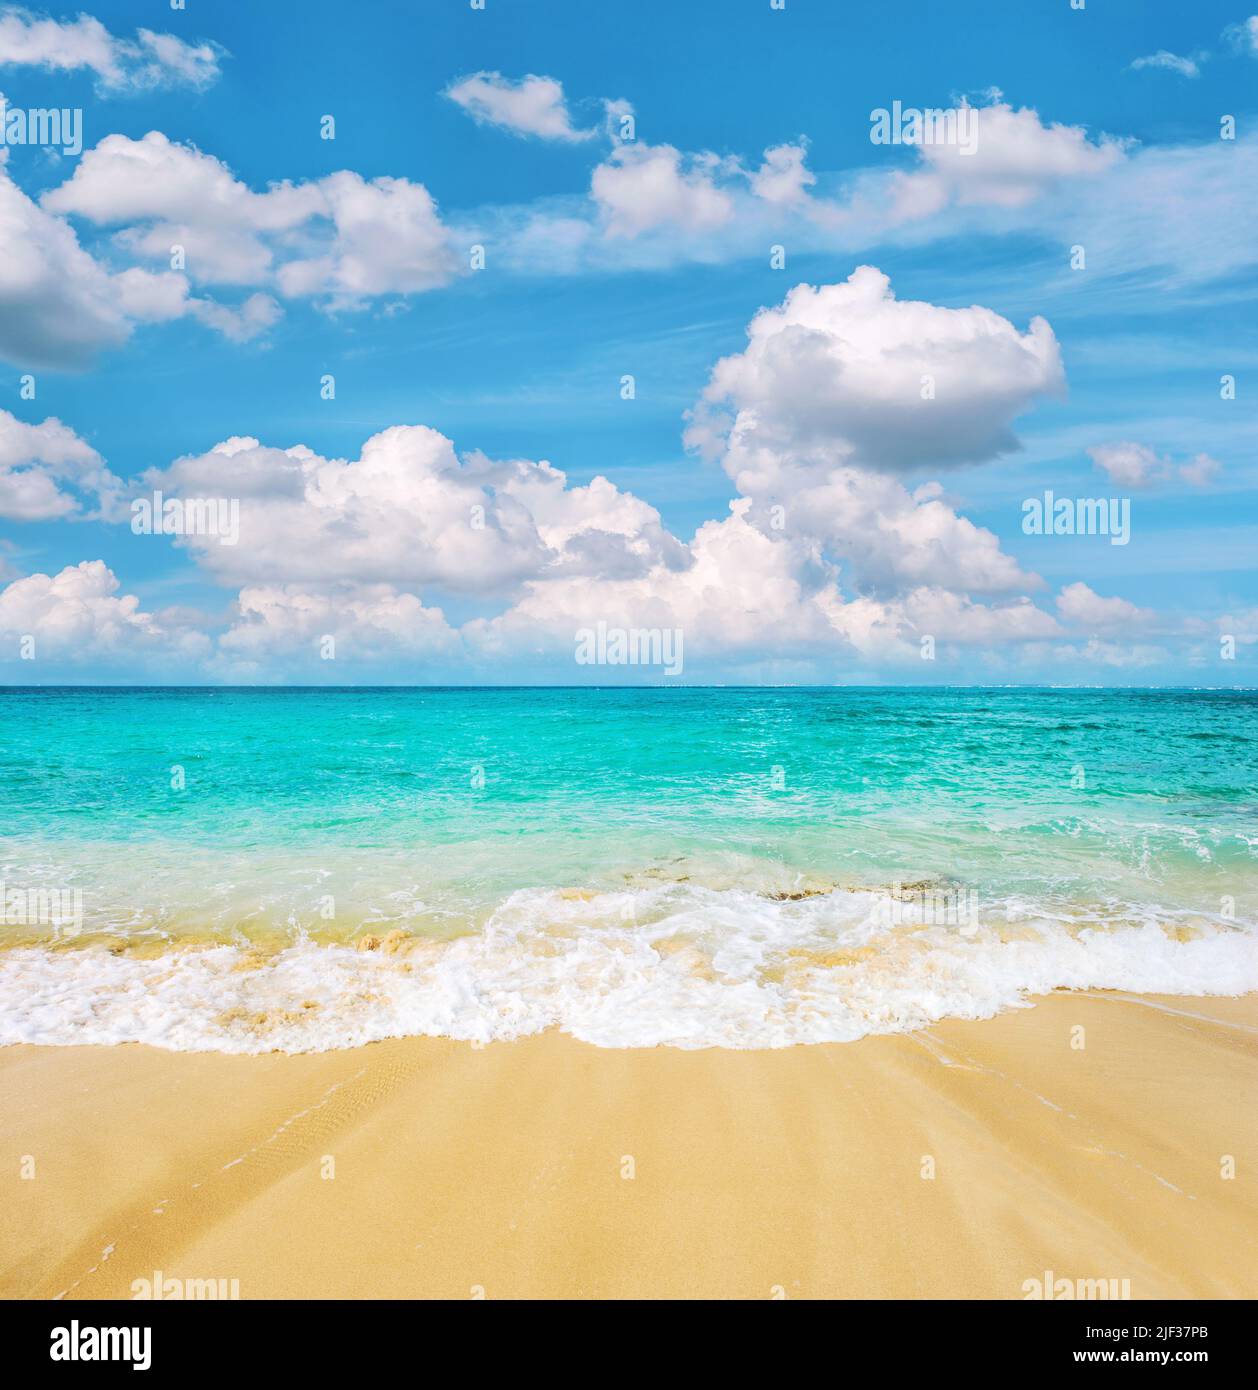 Plage de sable, mer turquoise et ciel bleu ciel nuageux. Arrière-plan des voyages d'été Banque D'Images